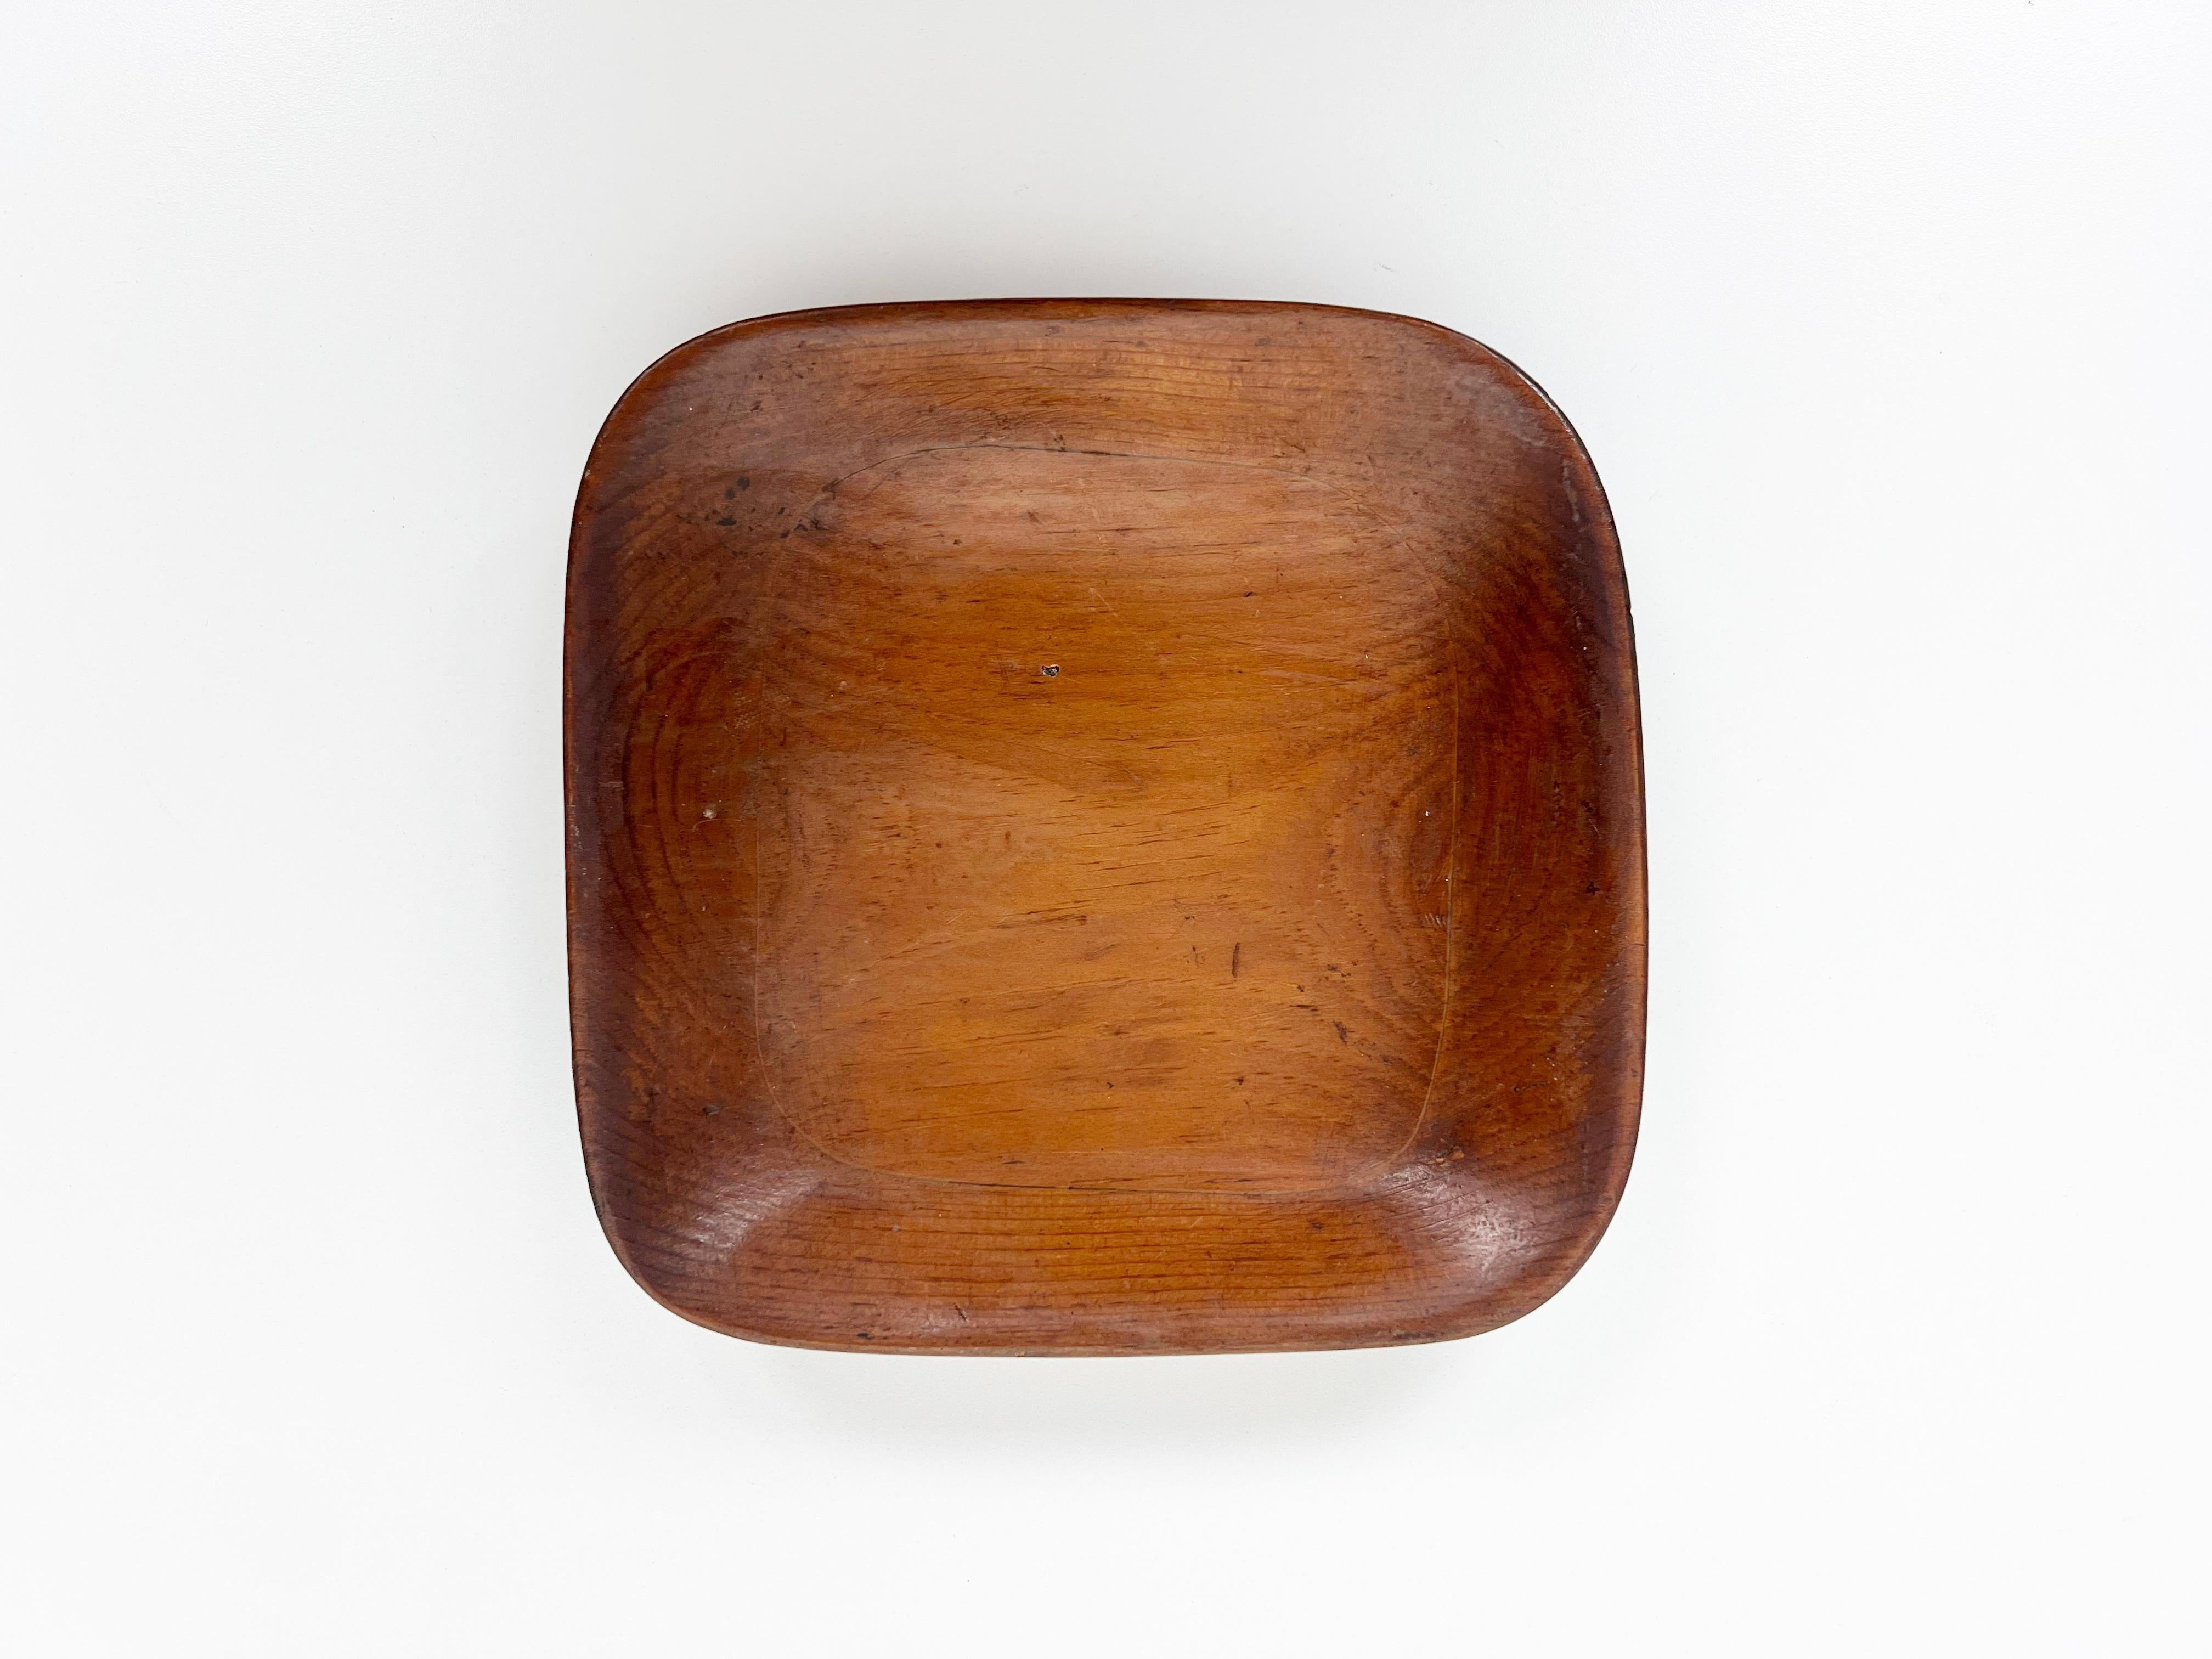 Vieux bol carré en bois primitif sculpté à la main.

Année : années 1930-40

Style : Primitif rustique

Dimensions : 8,5